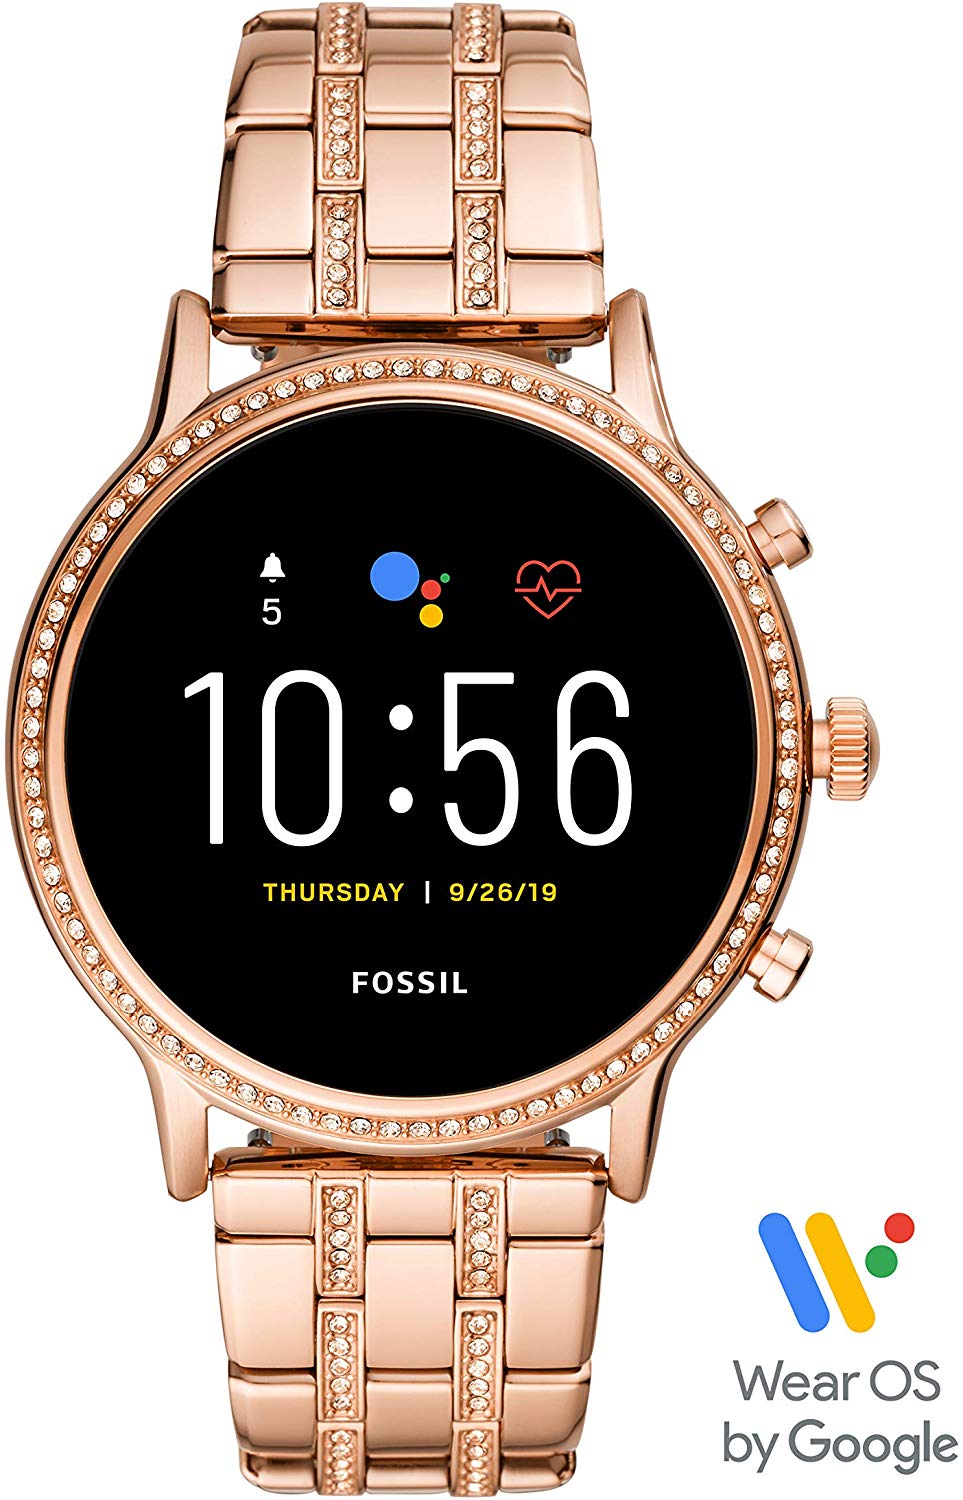 Fossil Gen 5 Julianna Stainless Steel Touchscreen Smartwatch Review for women